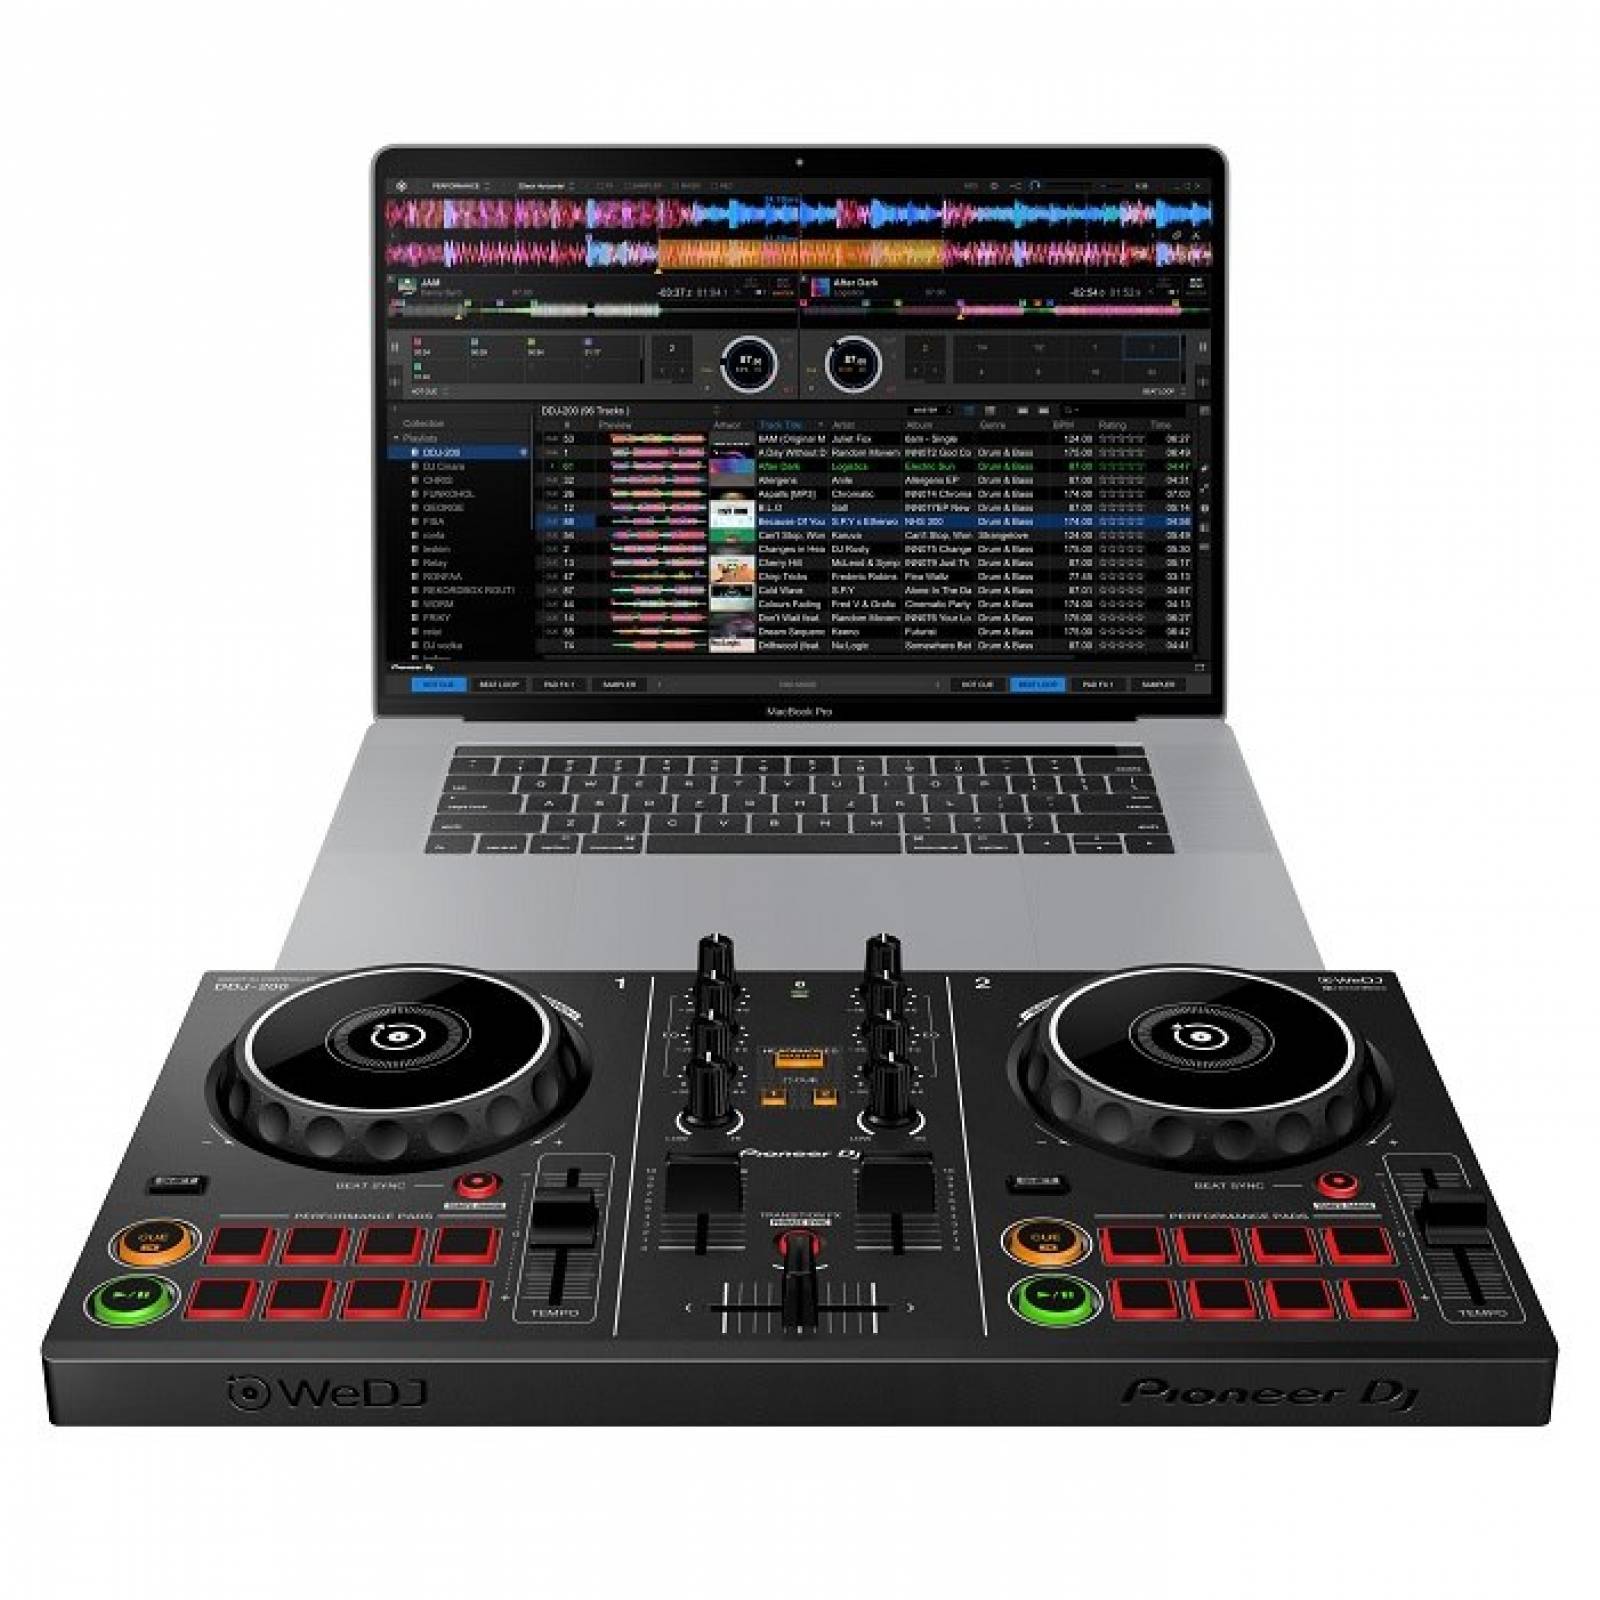 Controladora DJ Profesional Pioneer 2 platos DDJ-200